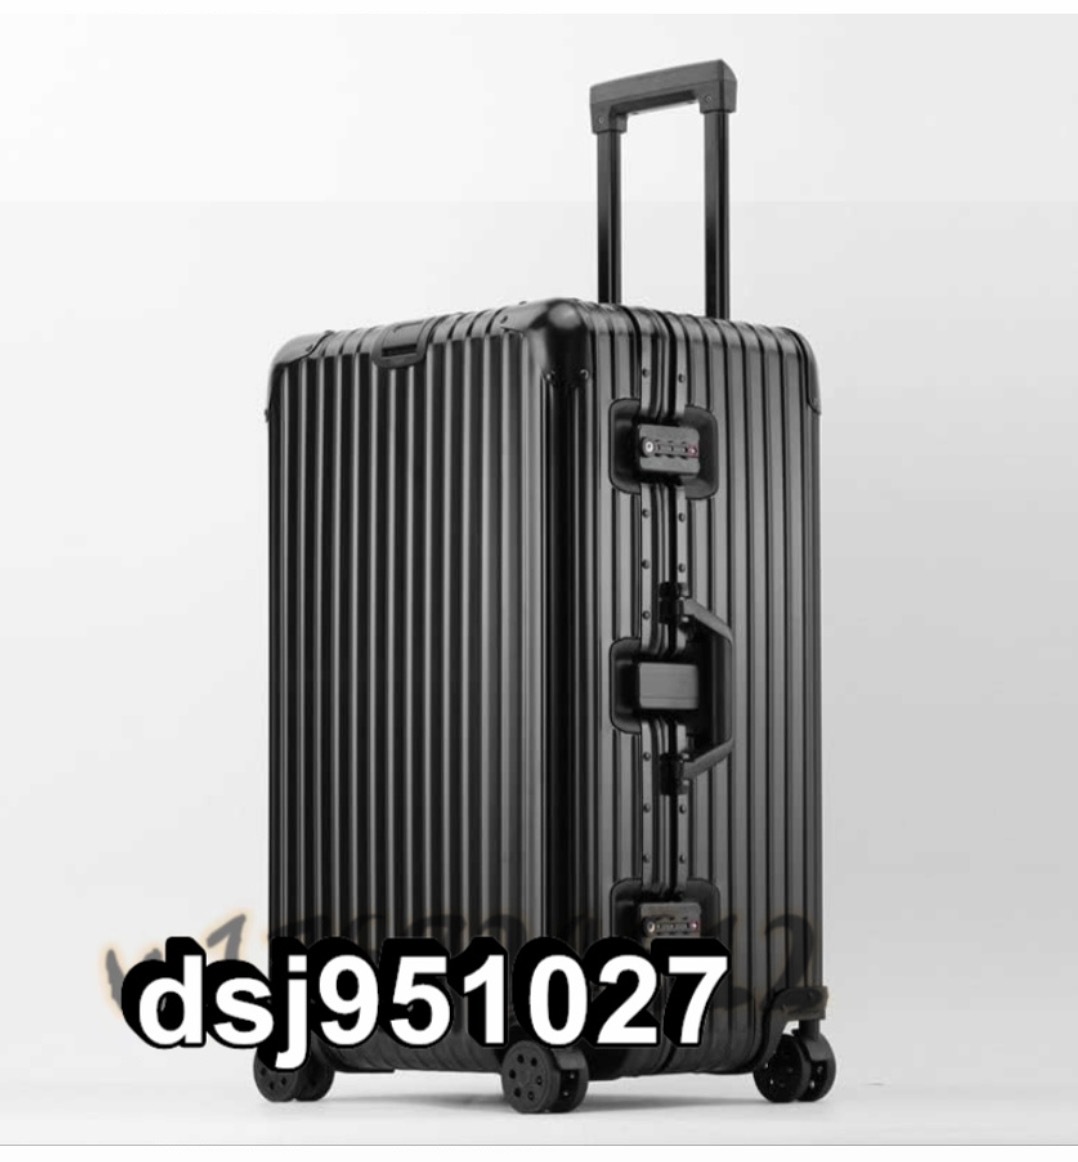 スーツケース アルミ合金ボディ キャリーケース トランク TSAロック 出張 旅行 26インチ 全4色 大容量 キャリーバッグ